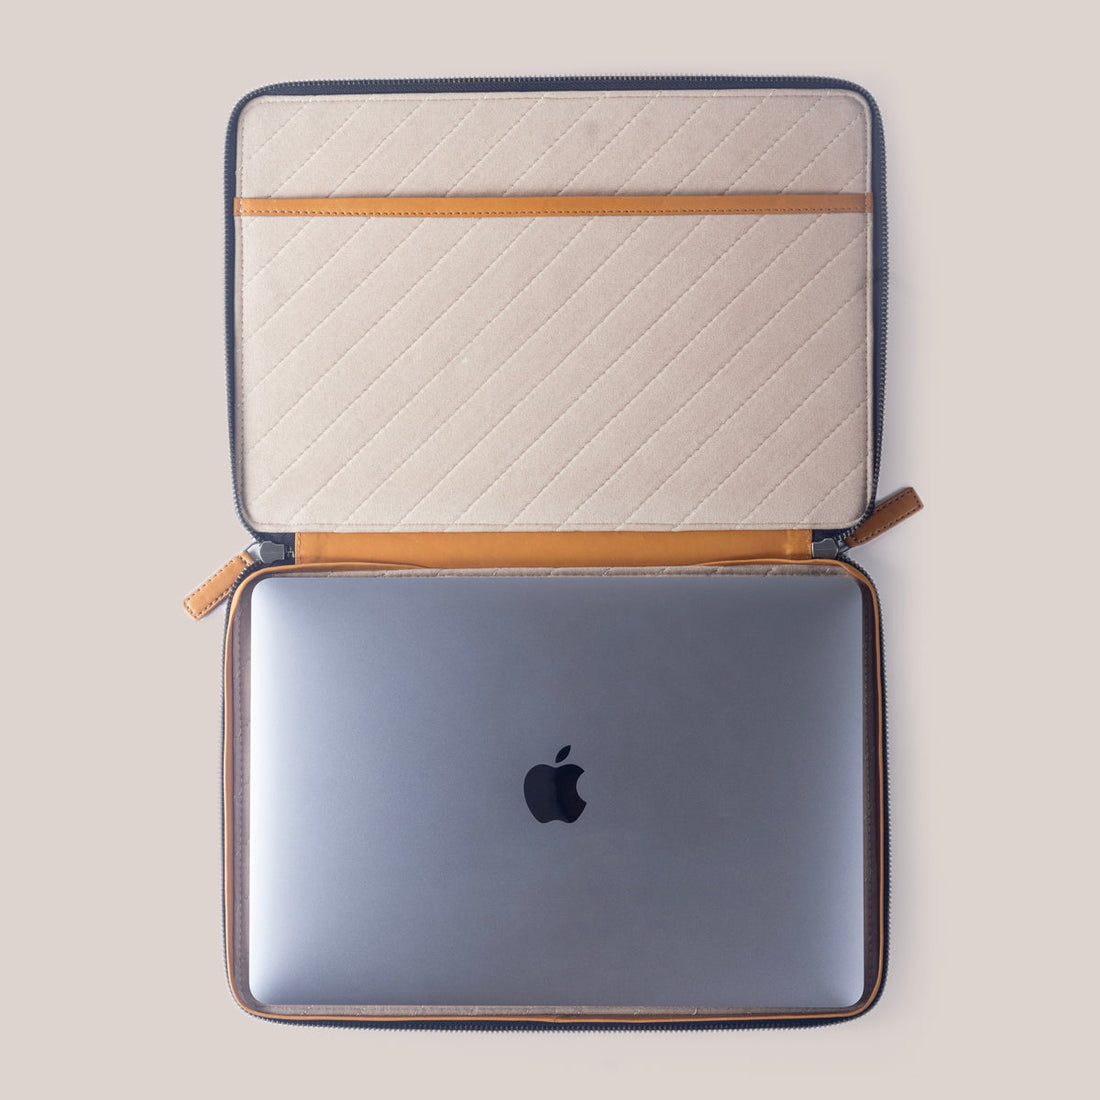 MacBook Zippered Laptop Case - Felt and Tan Crunch